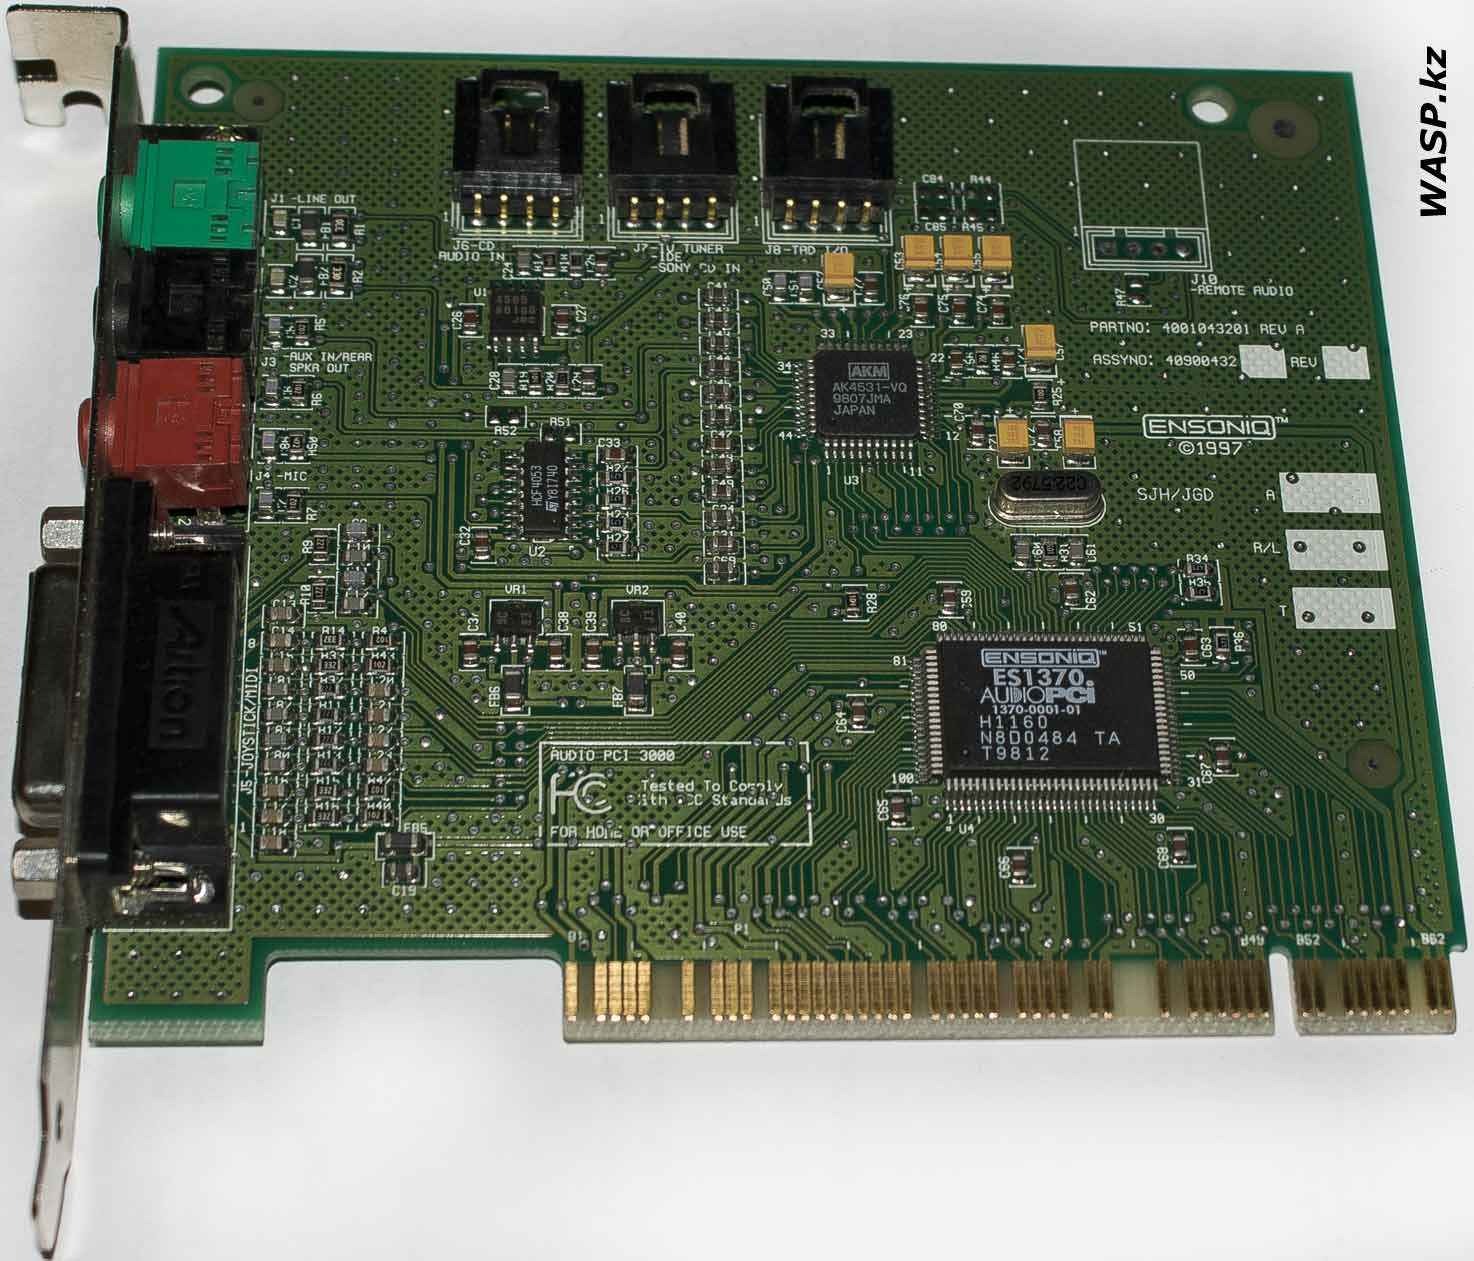 ENSONIQ ES1370 AUDIO PCI 3000 звуковая карта описание